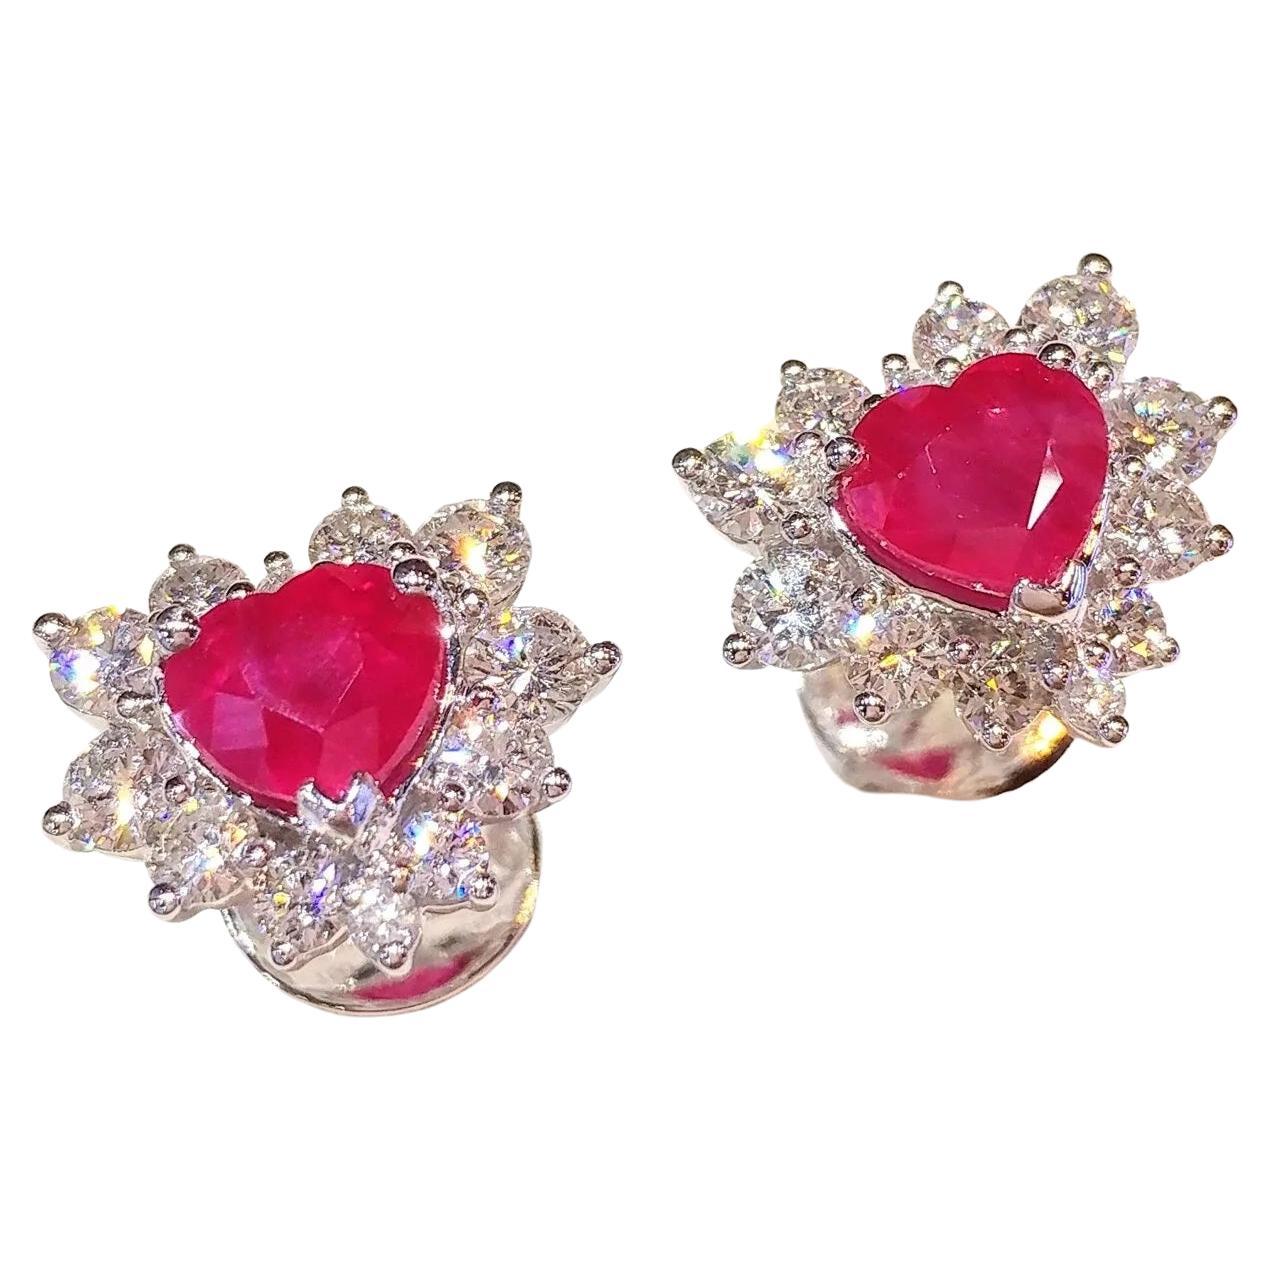 IGI Certified 2.23 Carat Ruby & 1.30 Carat Diamond Earrings in 18K White Gold For Sale